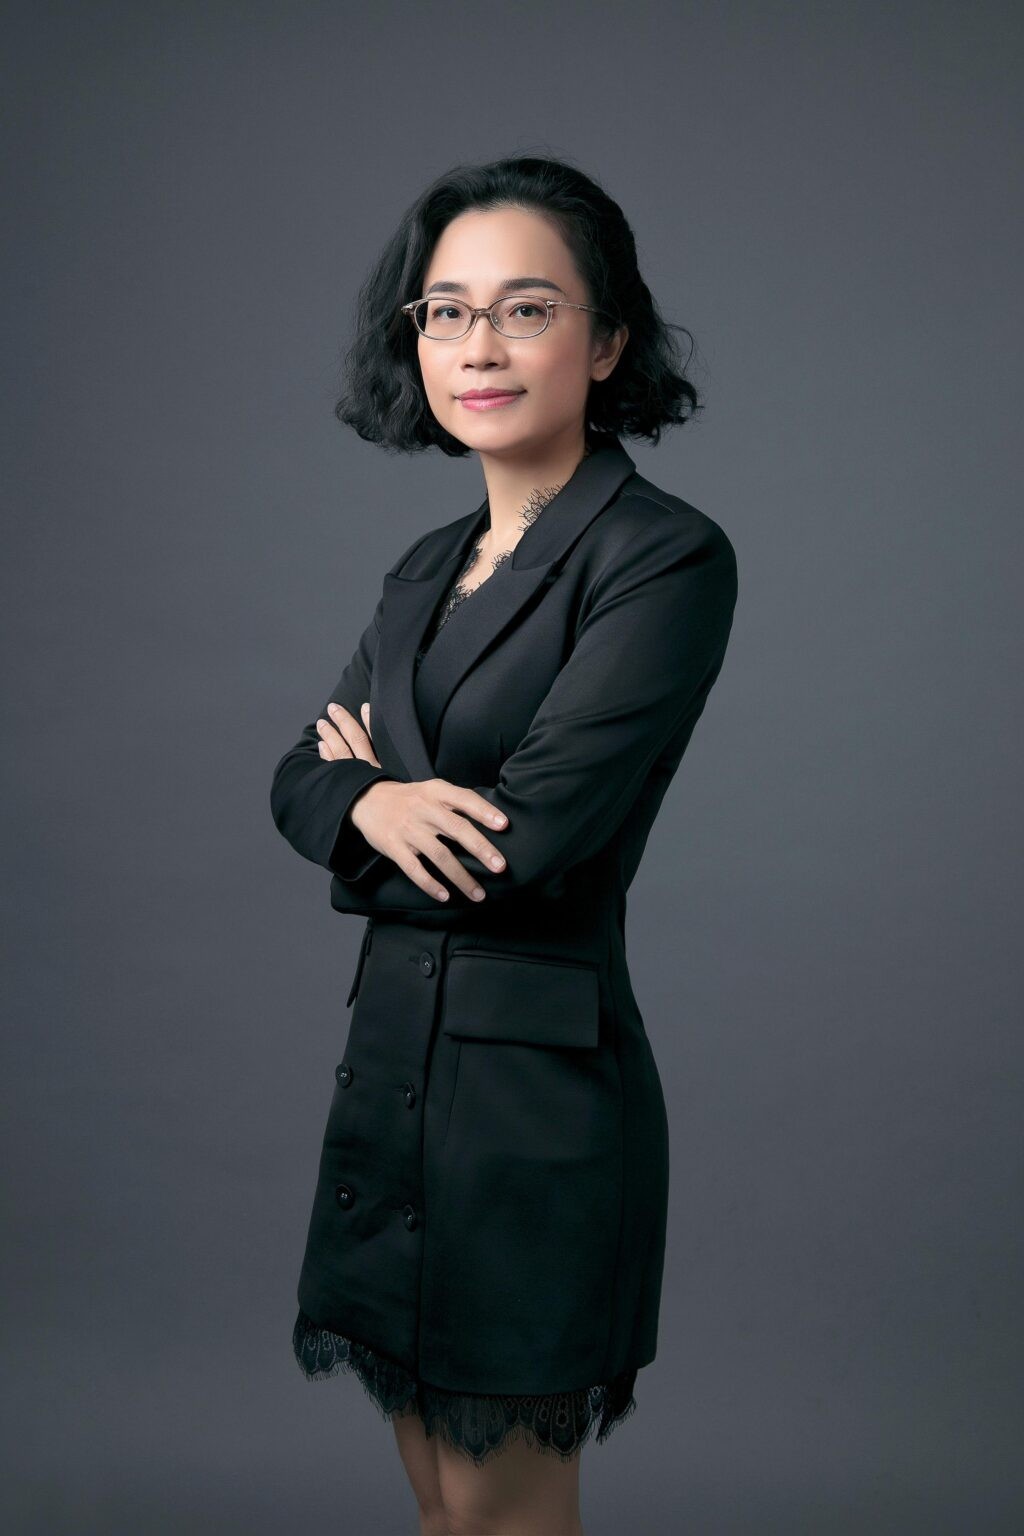 

Bà Nguyễn Ngô Vi Tâm sinh năm 1979, tốt nghiệp Đại học Luật TP. Hồ Chí Minh đồng thời có bằng Thạc sĩ Quản trị Kinh doanh của Đại học Quản trị Maastricht Hà Lan
